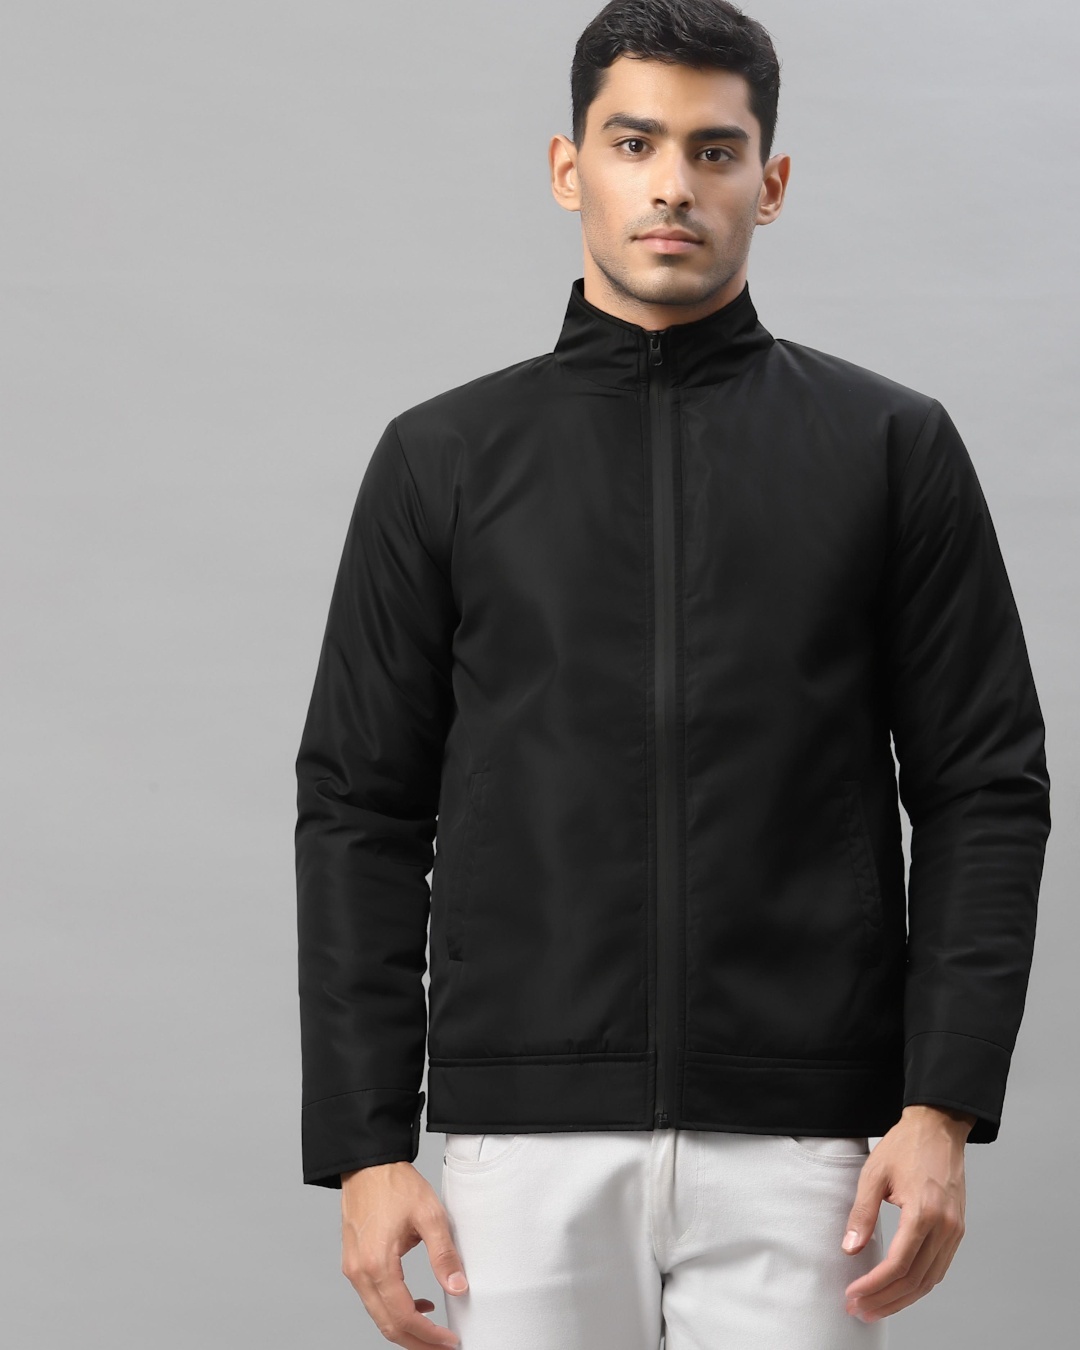 Buy Men's Black Zipped Jacket Online at Bewakoof